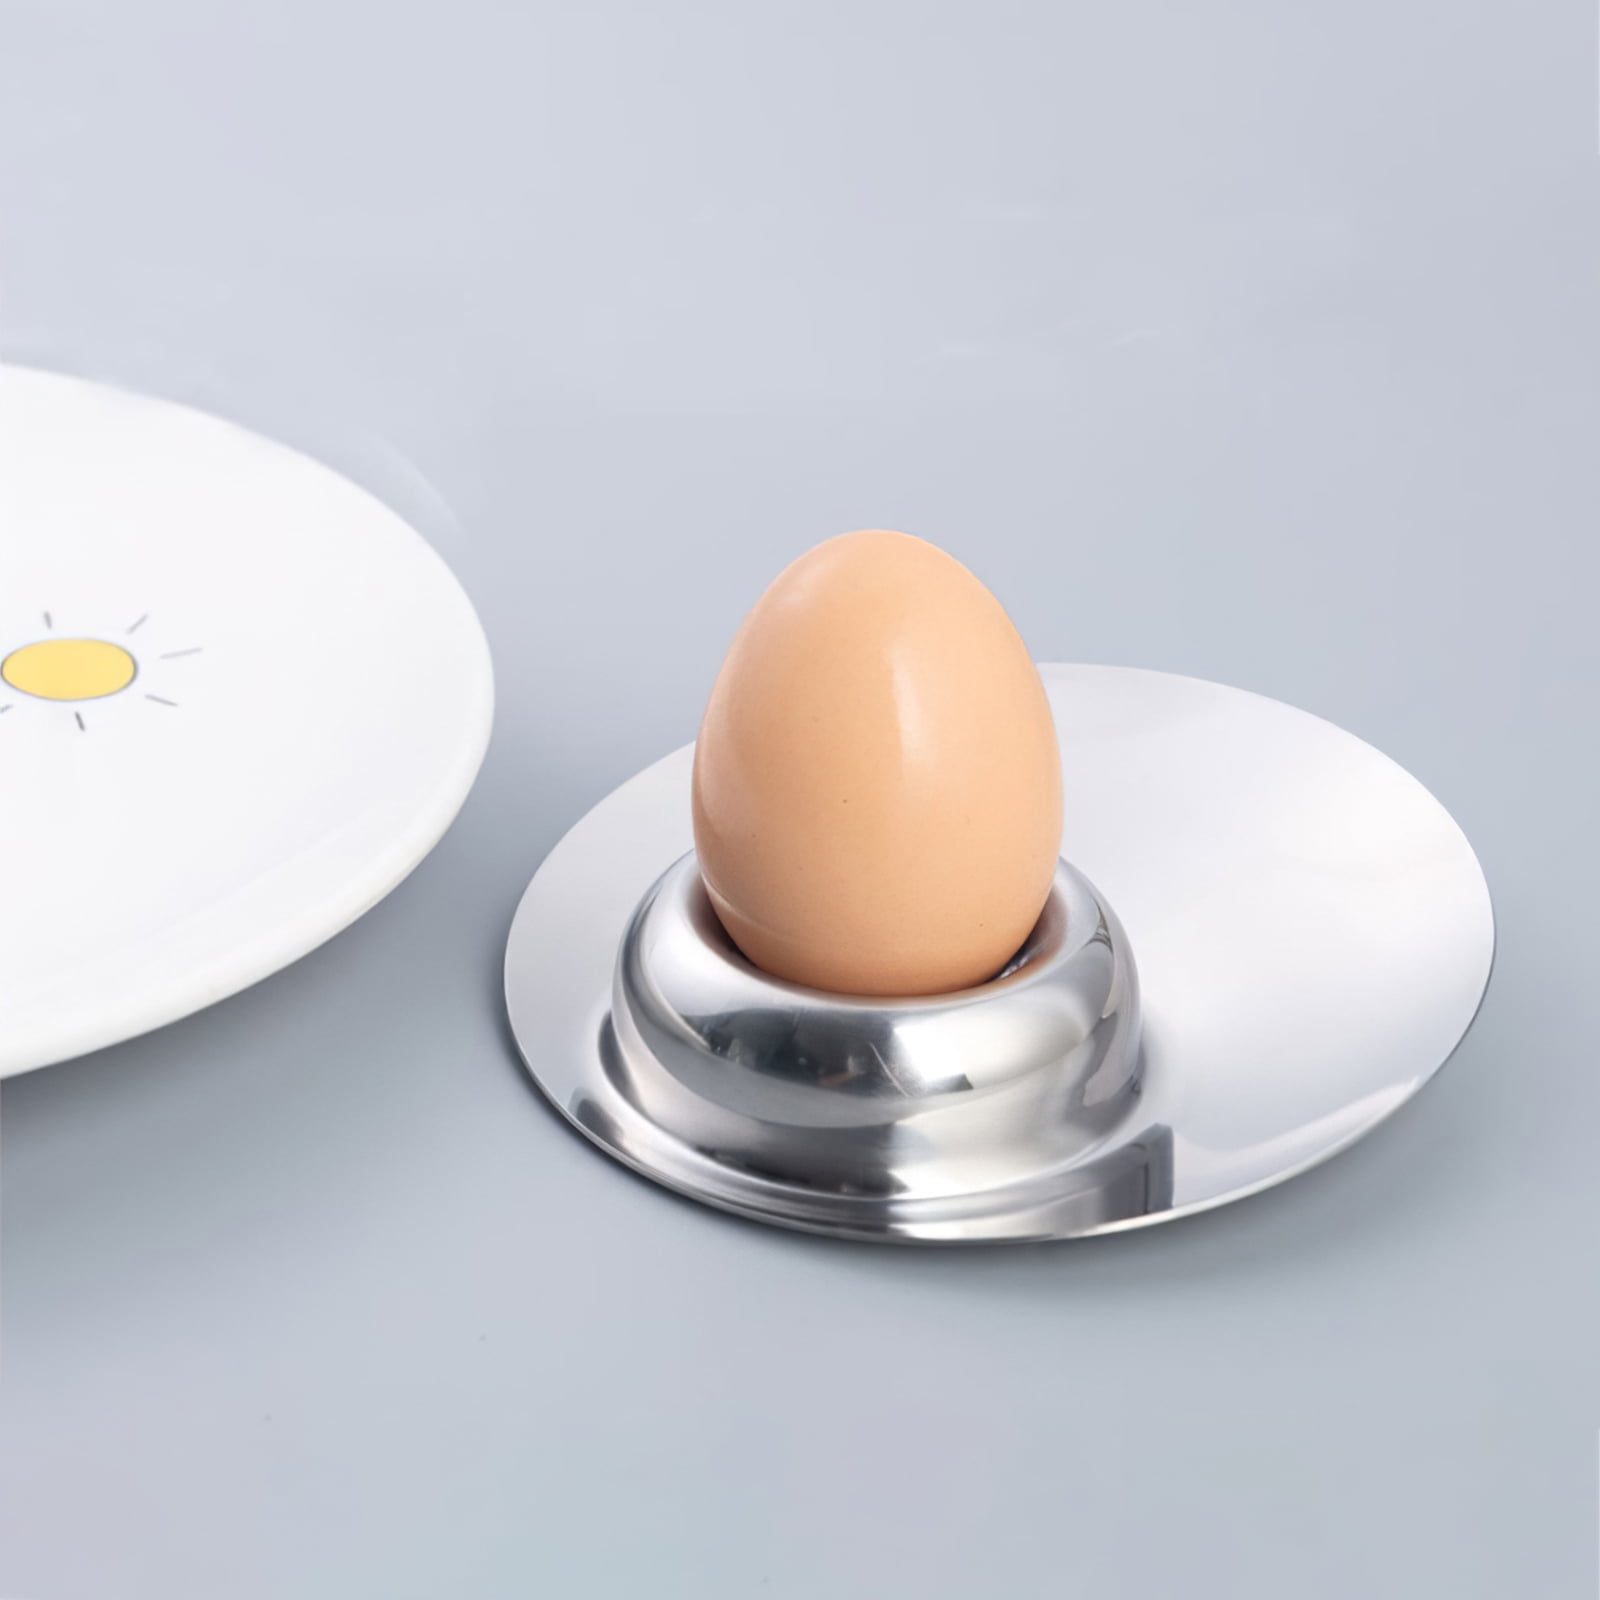 GSHLLO 2 Pcs Stainless Steel Egg Cups Egg Display Holders Kitchen Egg  Stands Hard Boil Egg Holders Easter Soft Boiled Egg Tools